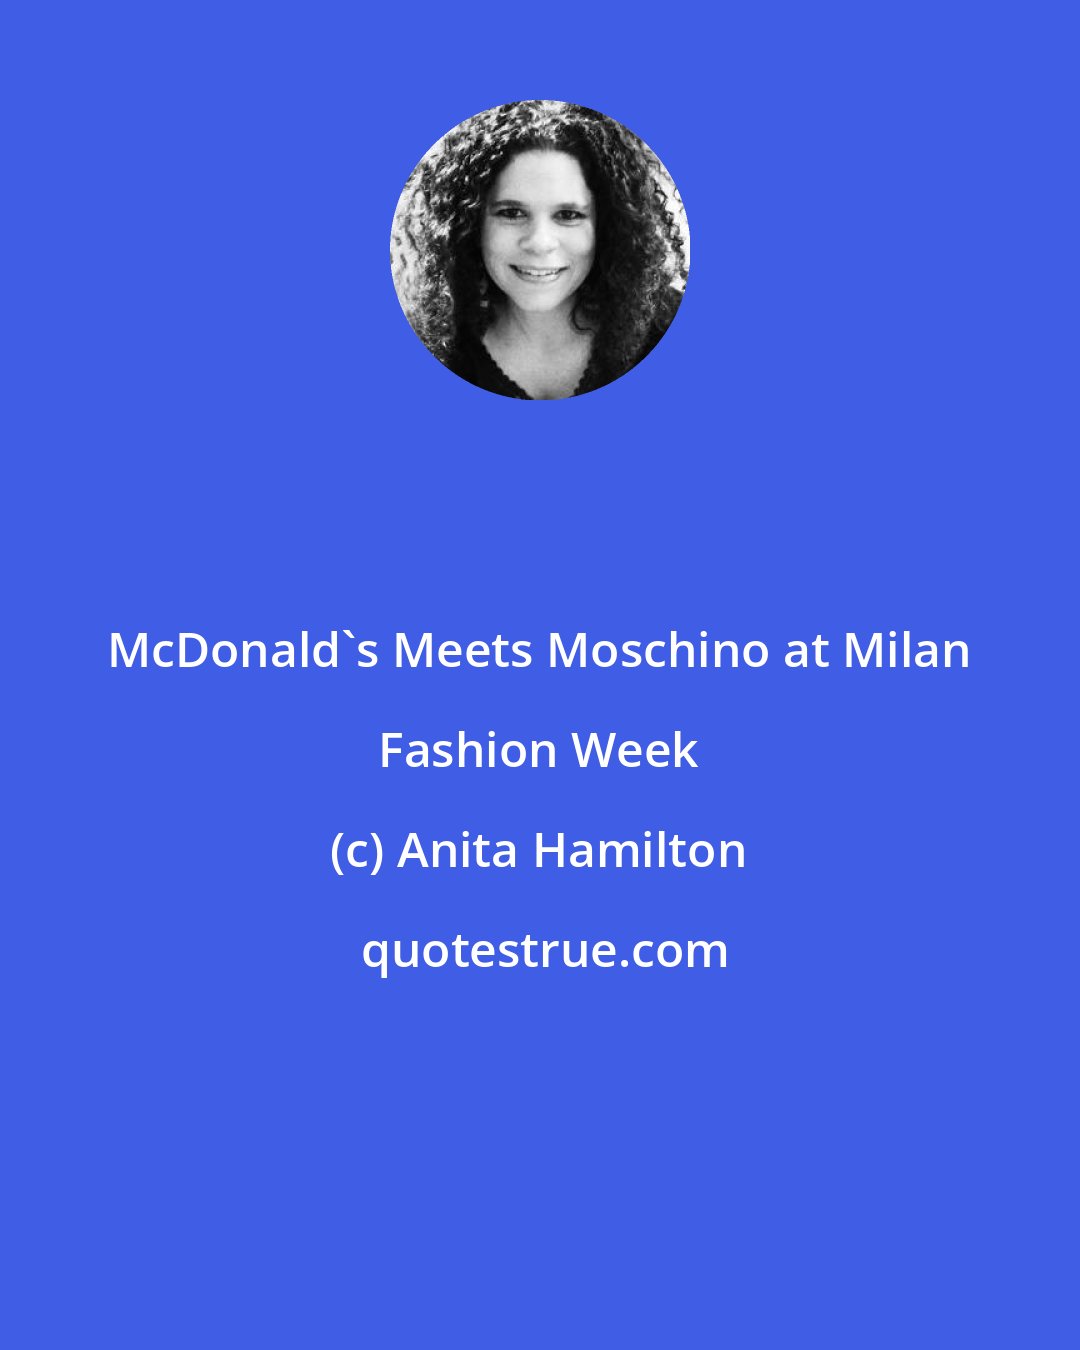 Anita Hamilton: McDonald's Meets Moschino at Milan Fashion Week